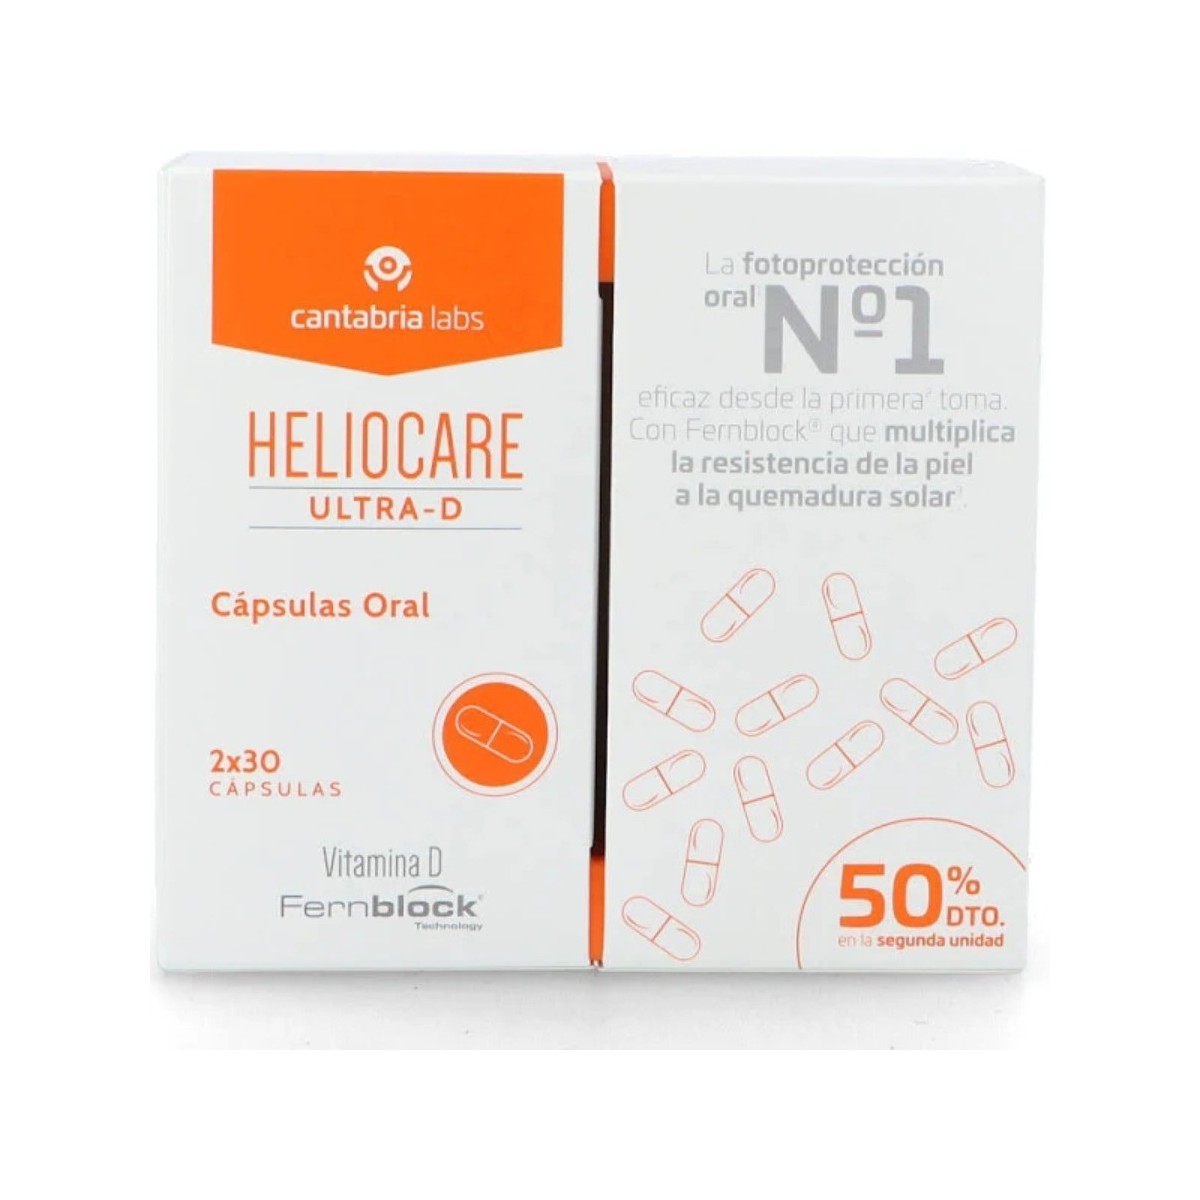 heliocare-ultra-d-duplo-2x30-capsulas